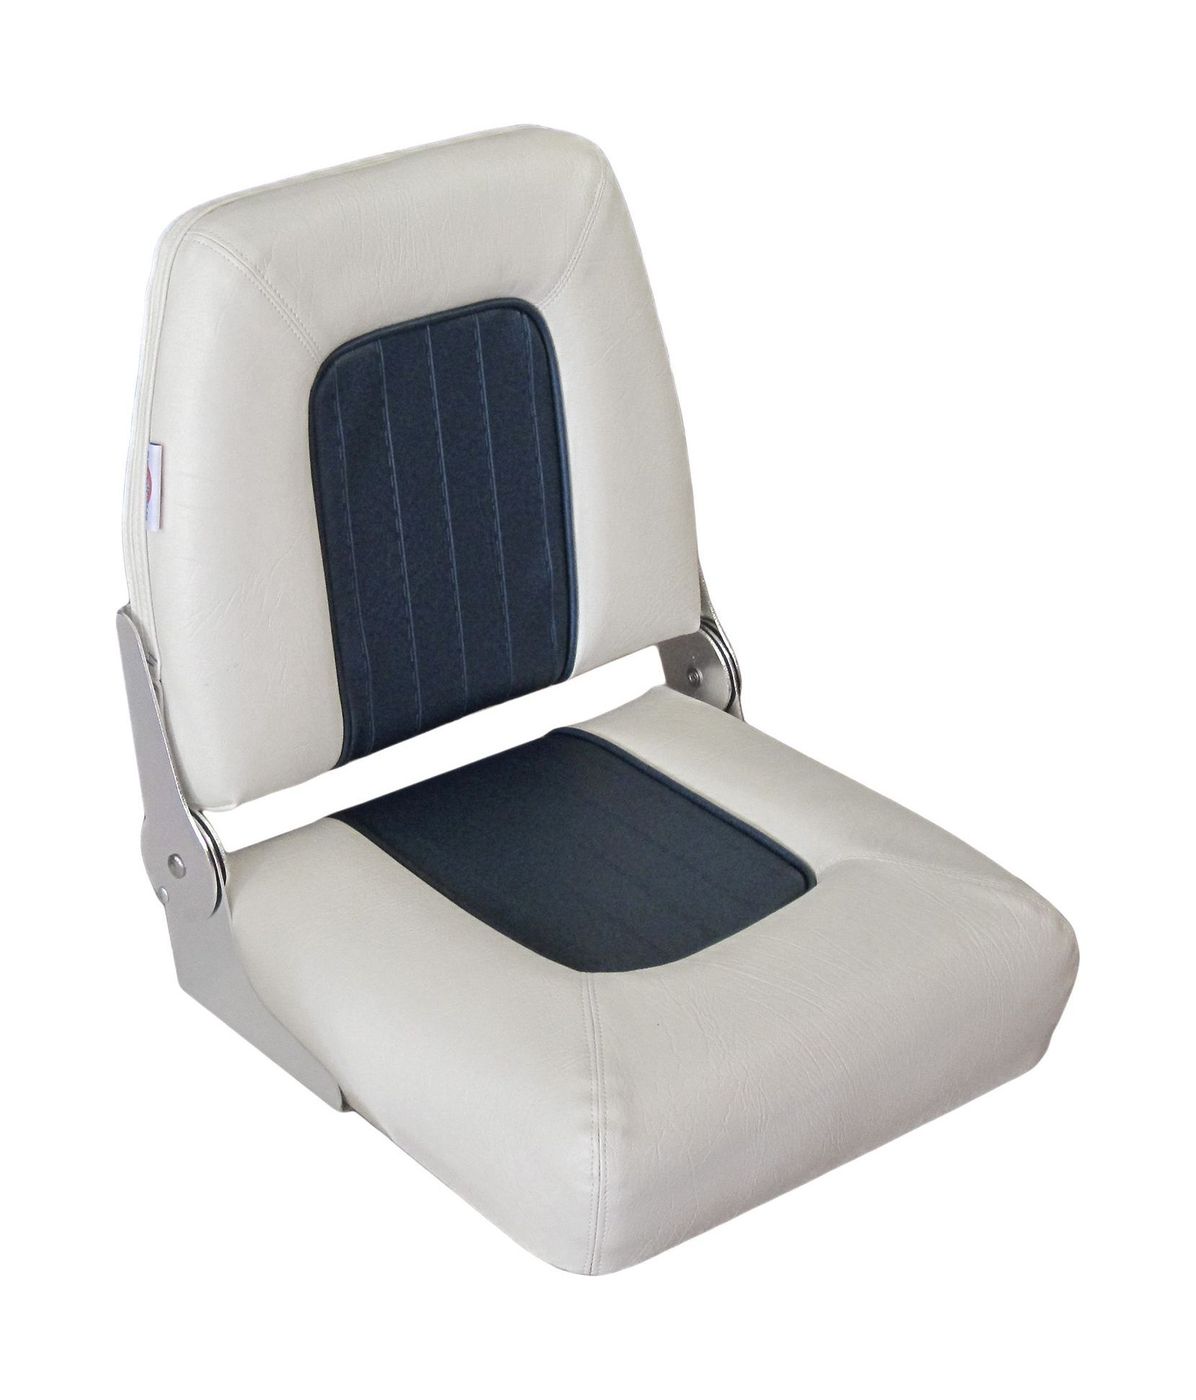 Кресло COACH JUNIOR складное мягкое двухцветное 1040625 кресло шезлонг складное со съемным матрасом и декоративной подушкой подножка haushalt hhk7 bl синий